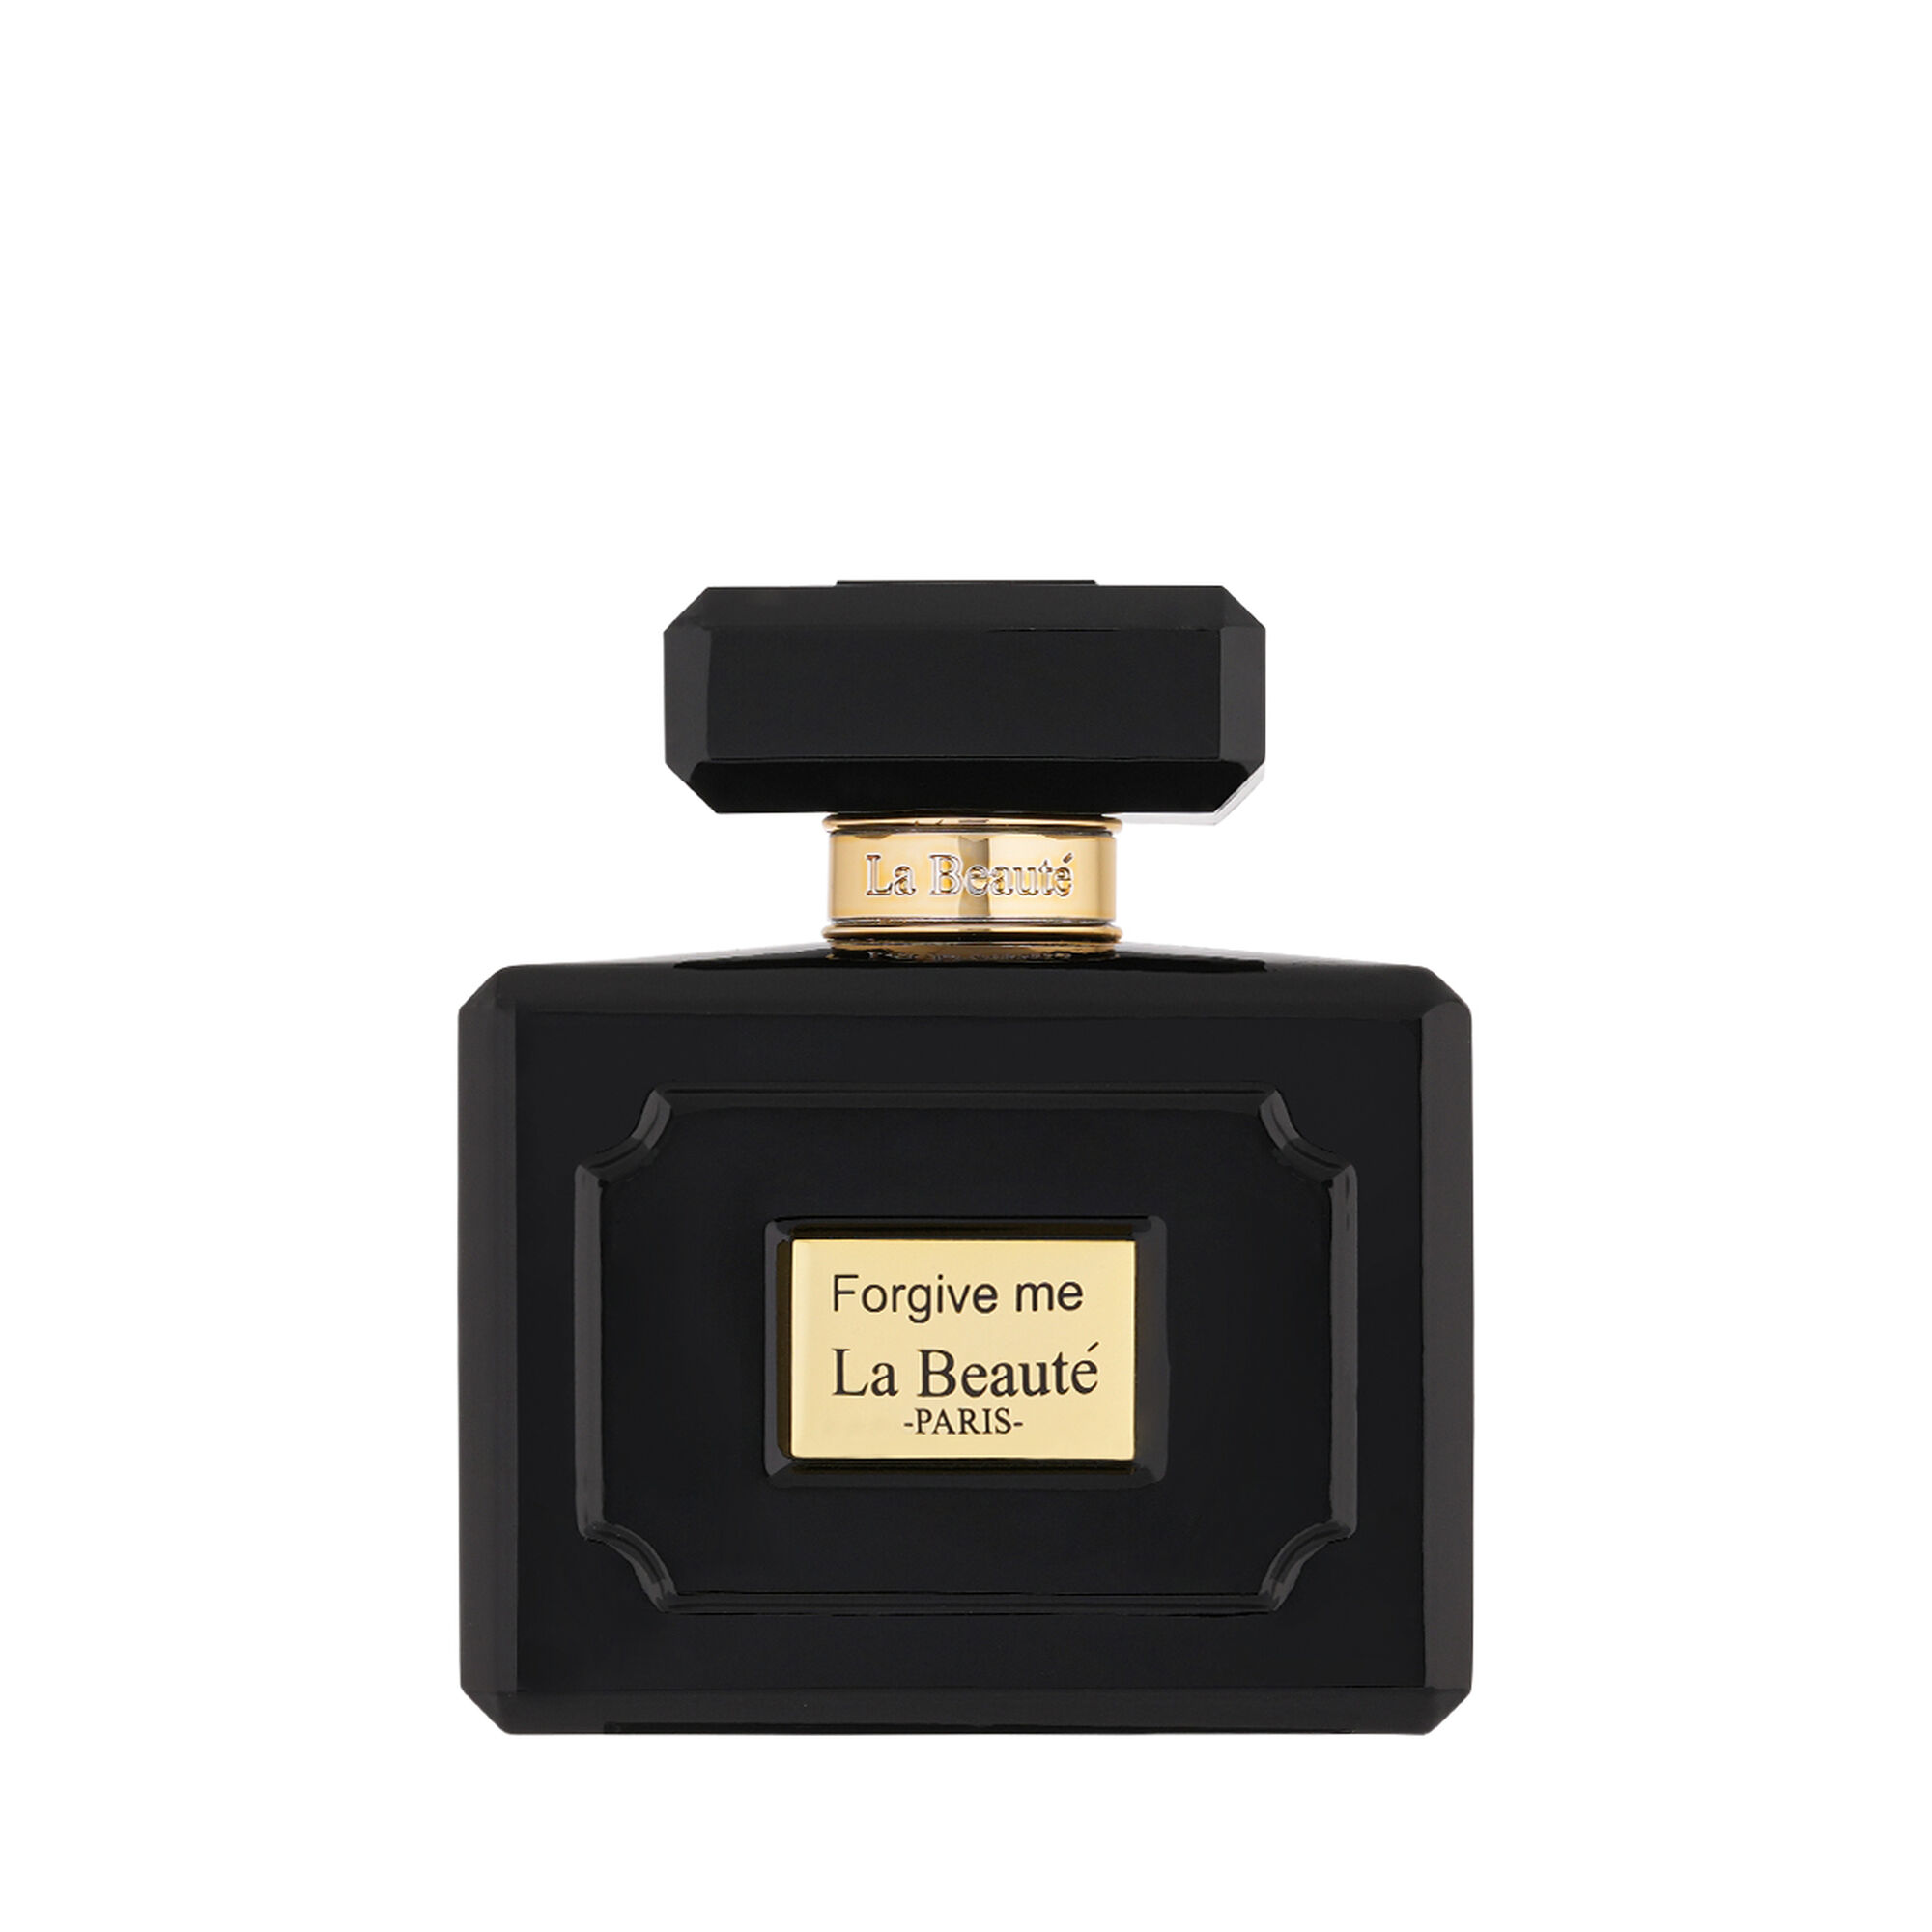  Forgive Me 100 ml - Eau de Parfum - La Beauté